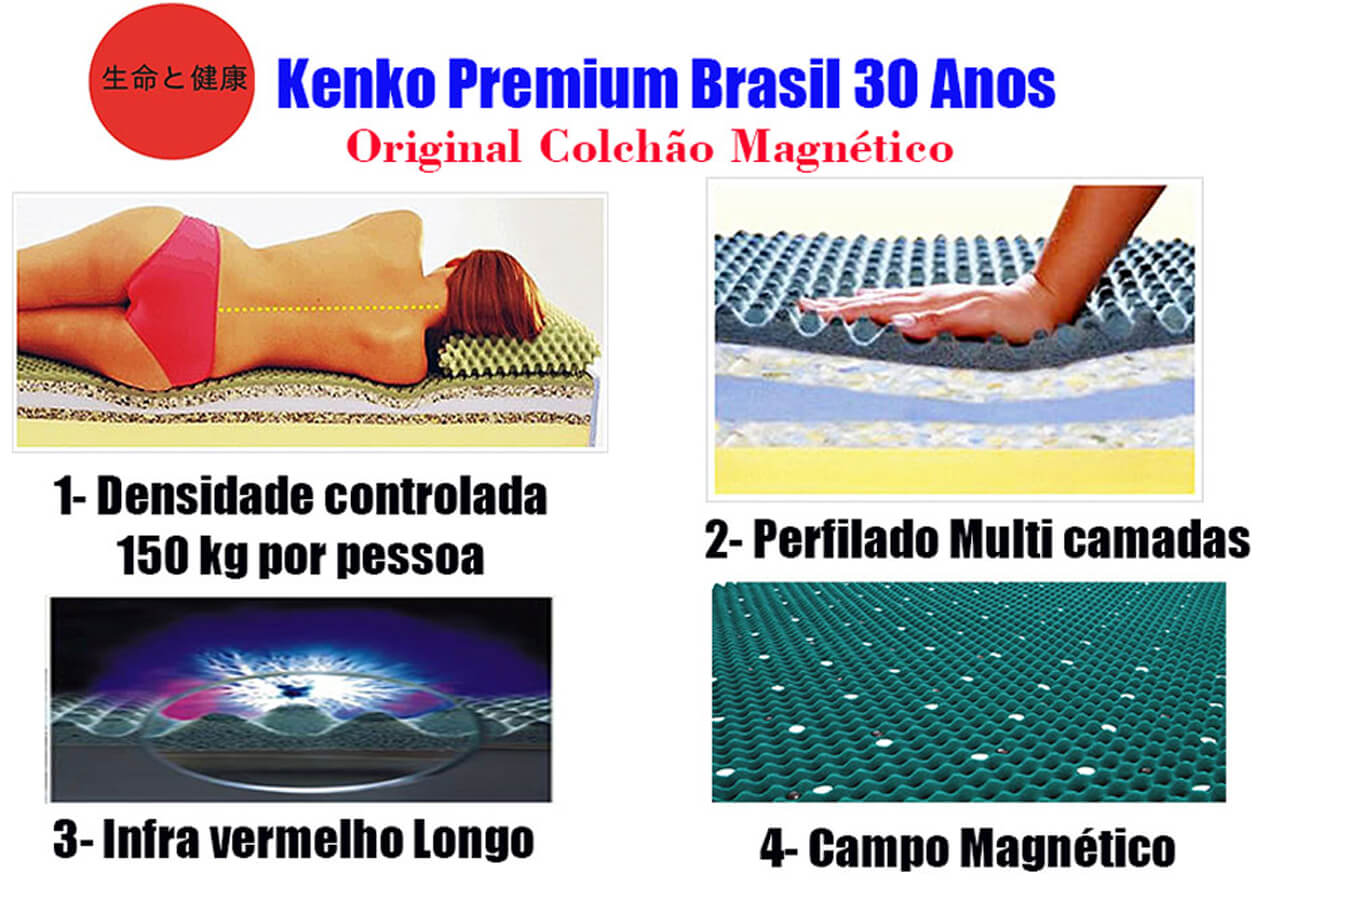 Colchão Magnético King Size 1,93x2,03x30 Cm Kenko Premium Gold Linha Exportação  - Kenko Premium Colchões